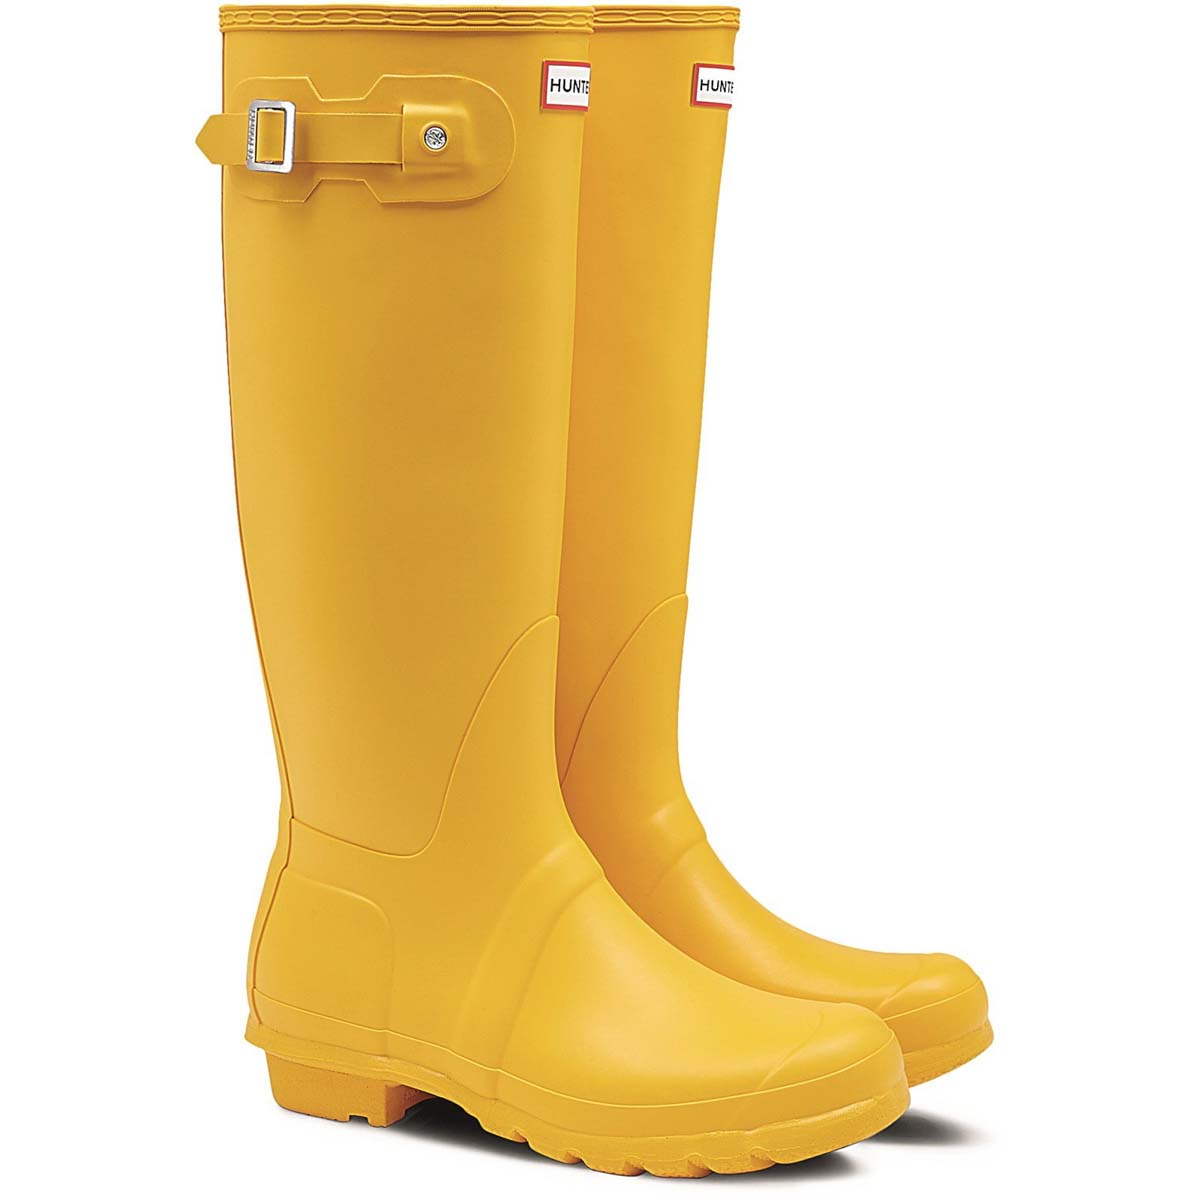 Hunter - Original Tall (Yellow) Wft1000Rma In Size 8 In Plain Yellow